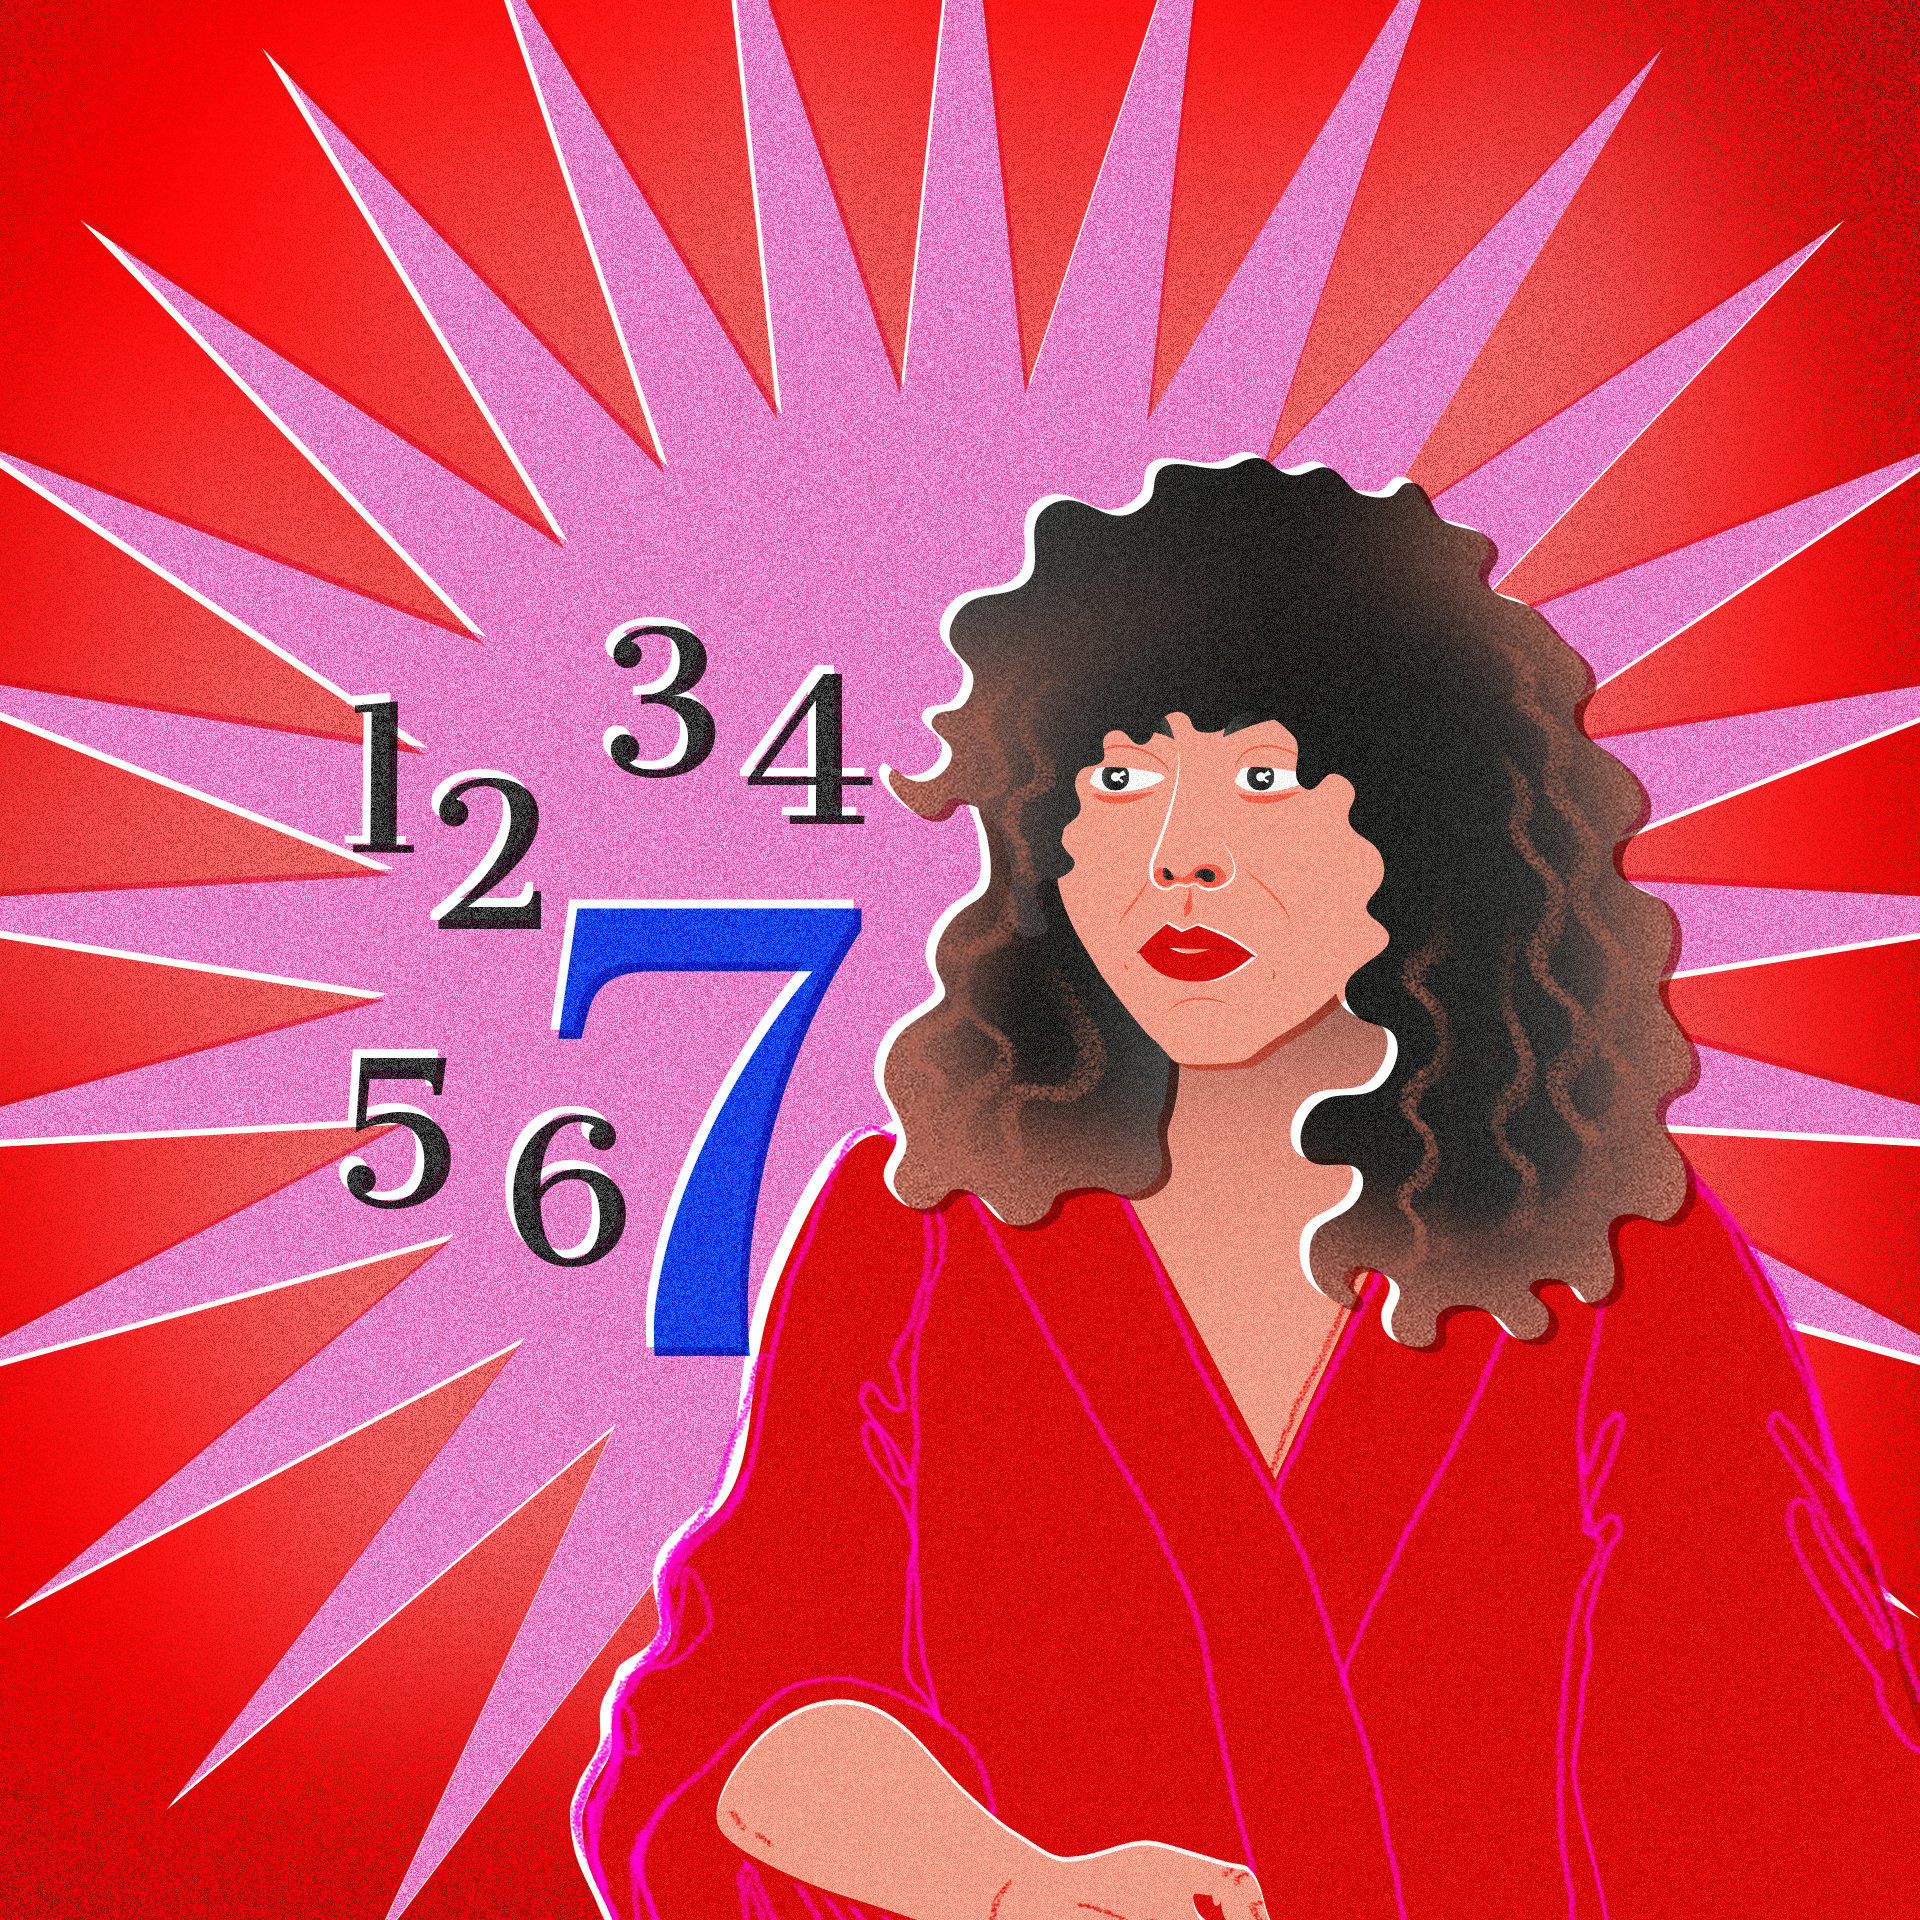 Różowo-czerwona grafika z wizerunkiem kobiety o kręconych włosach (Agnieszki Szpili) i cyframi od 1 do 7, gdzie wyróżniona jest cyfra 7